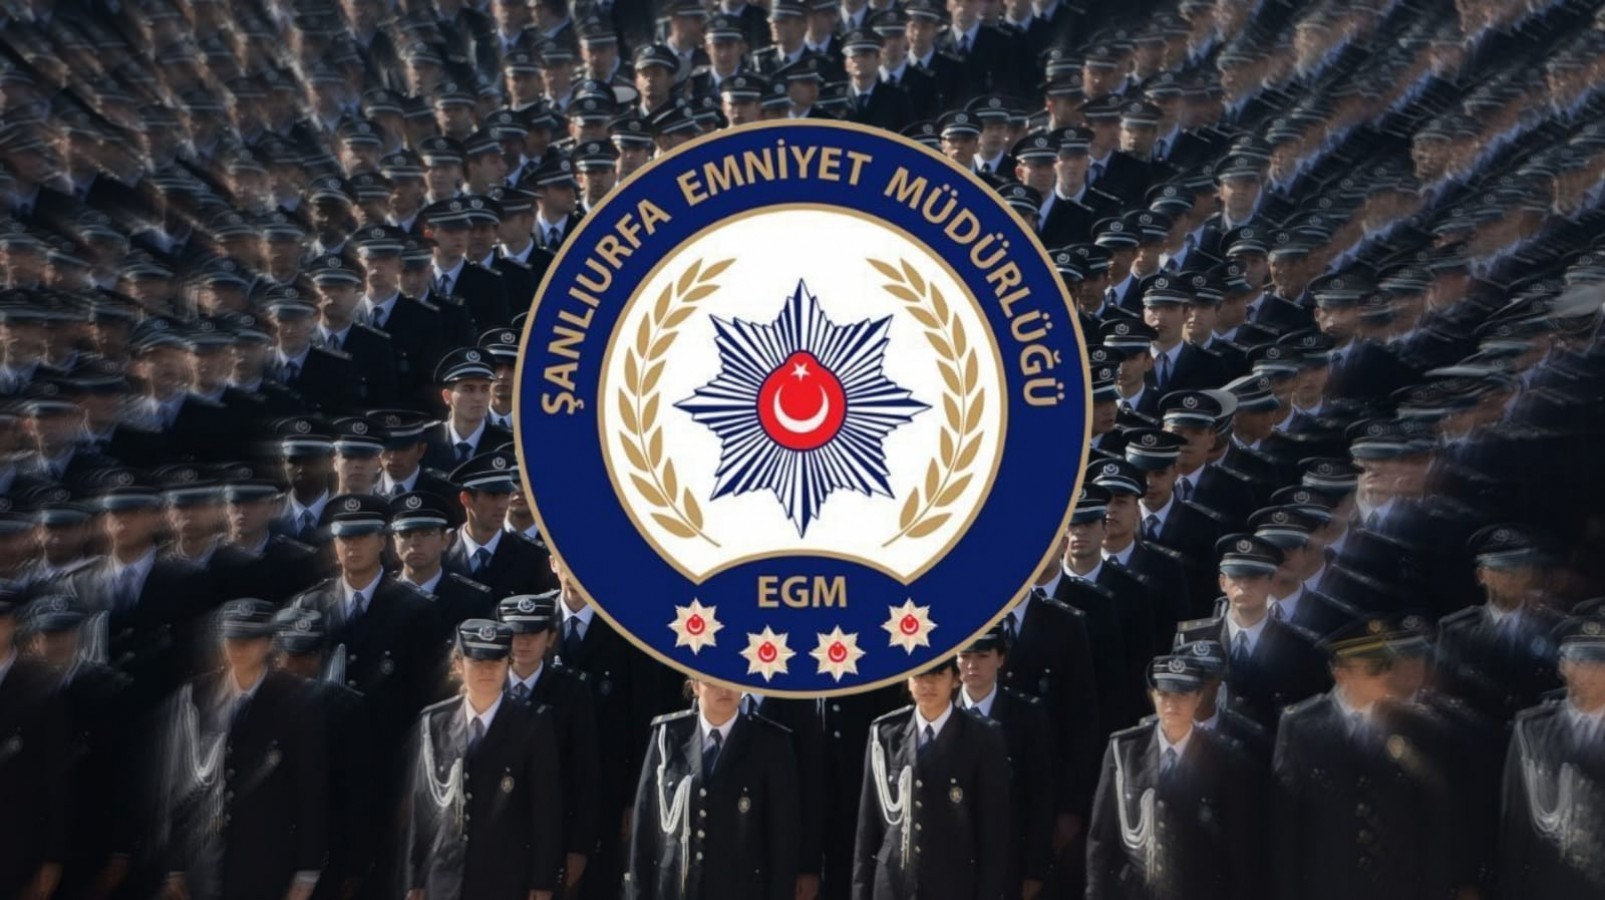 Şanlıurfa'da Polis Teşkilatının 178. Kuruluş Yıl Dönümü Etkinlikleri Düzenlenecek;